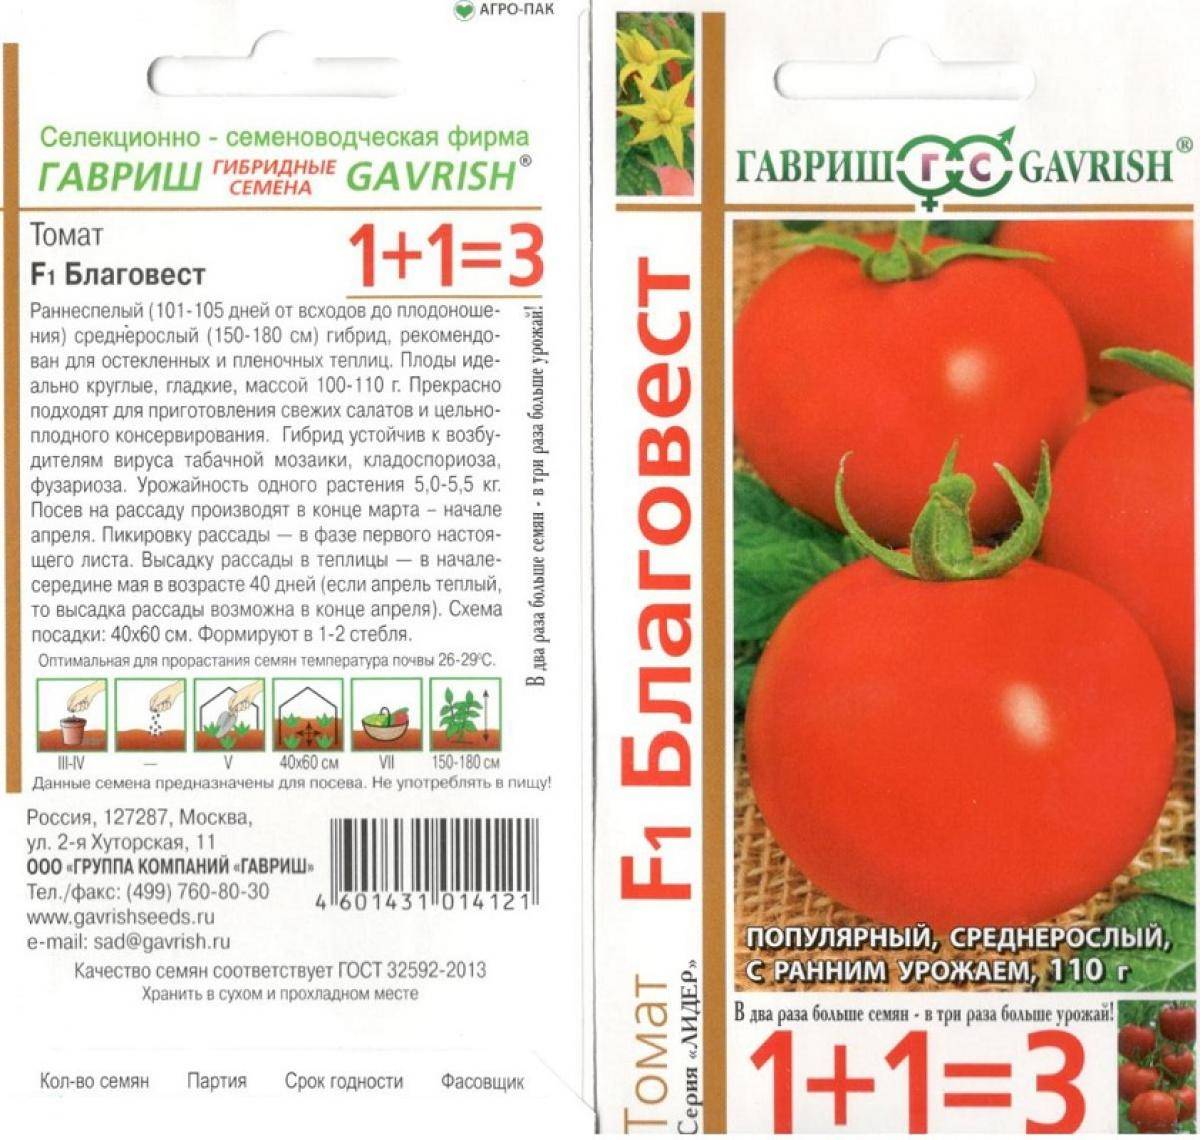 Томат благовест f1: описание гибрида, отзывы и фото урожая, выращивание, посадка и уход, урожайность сорта